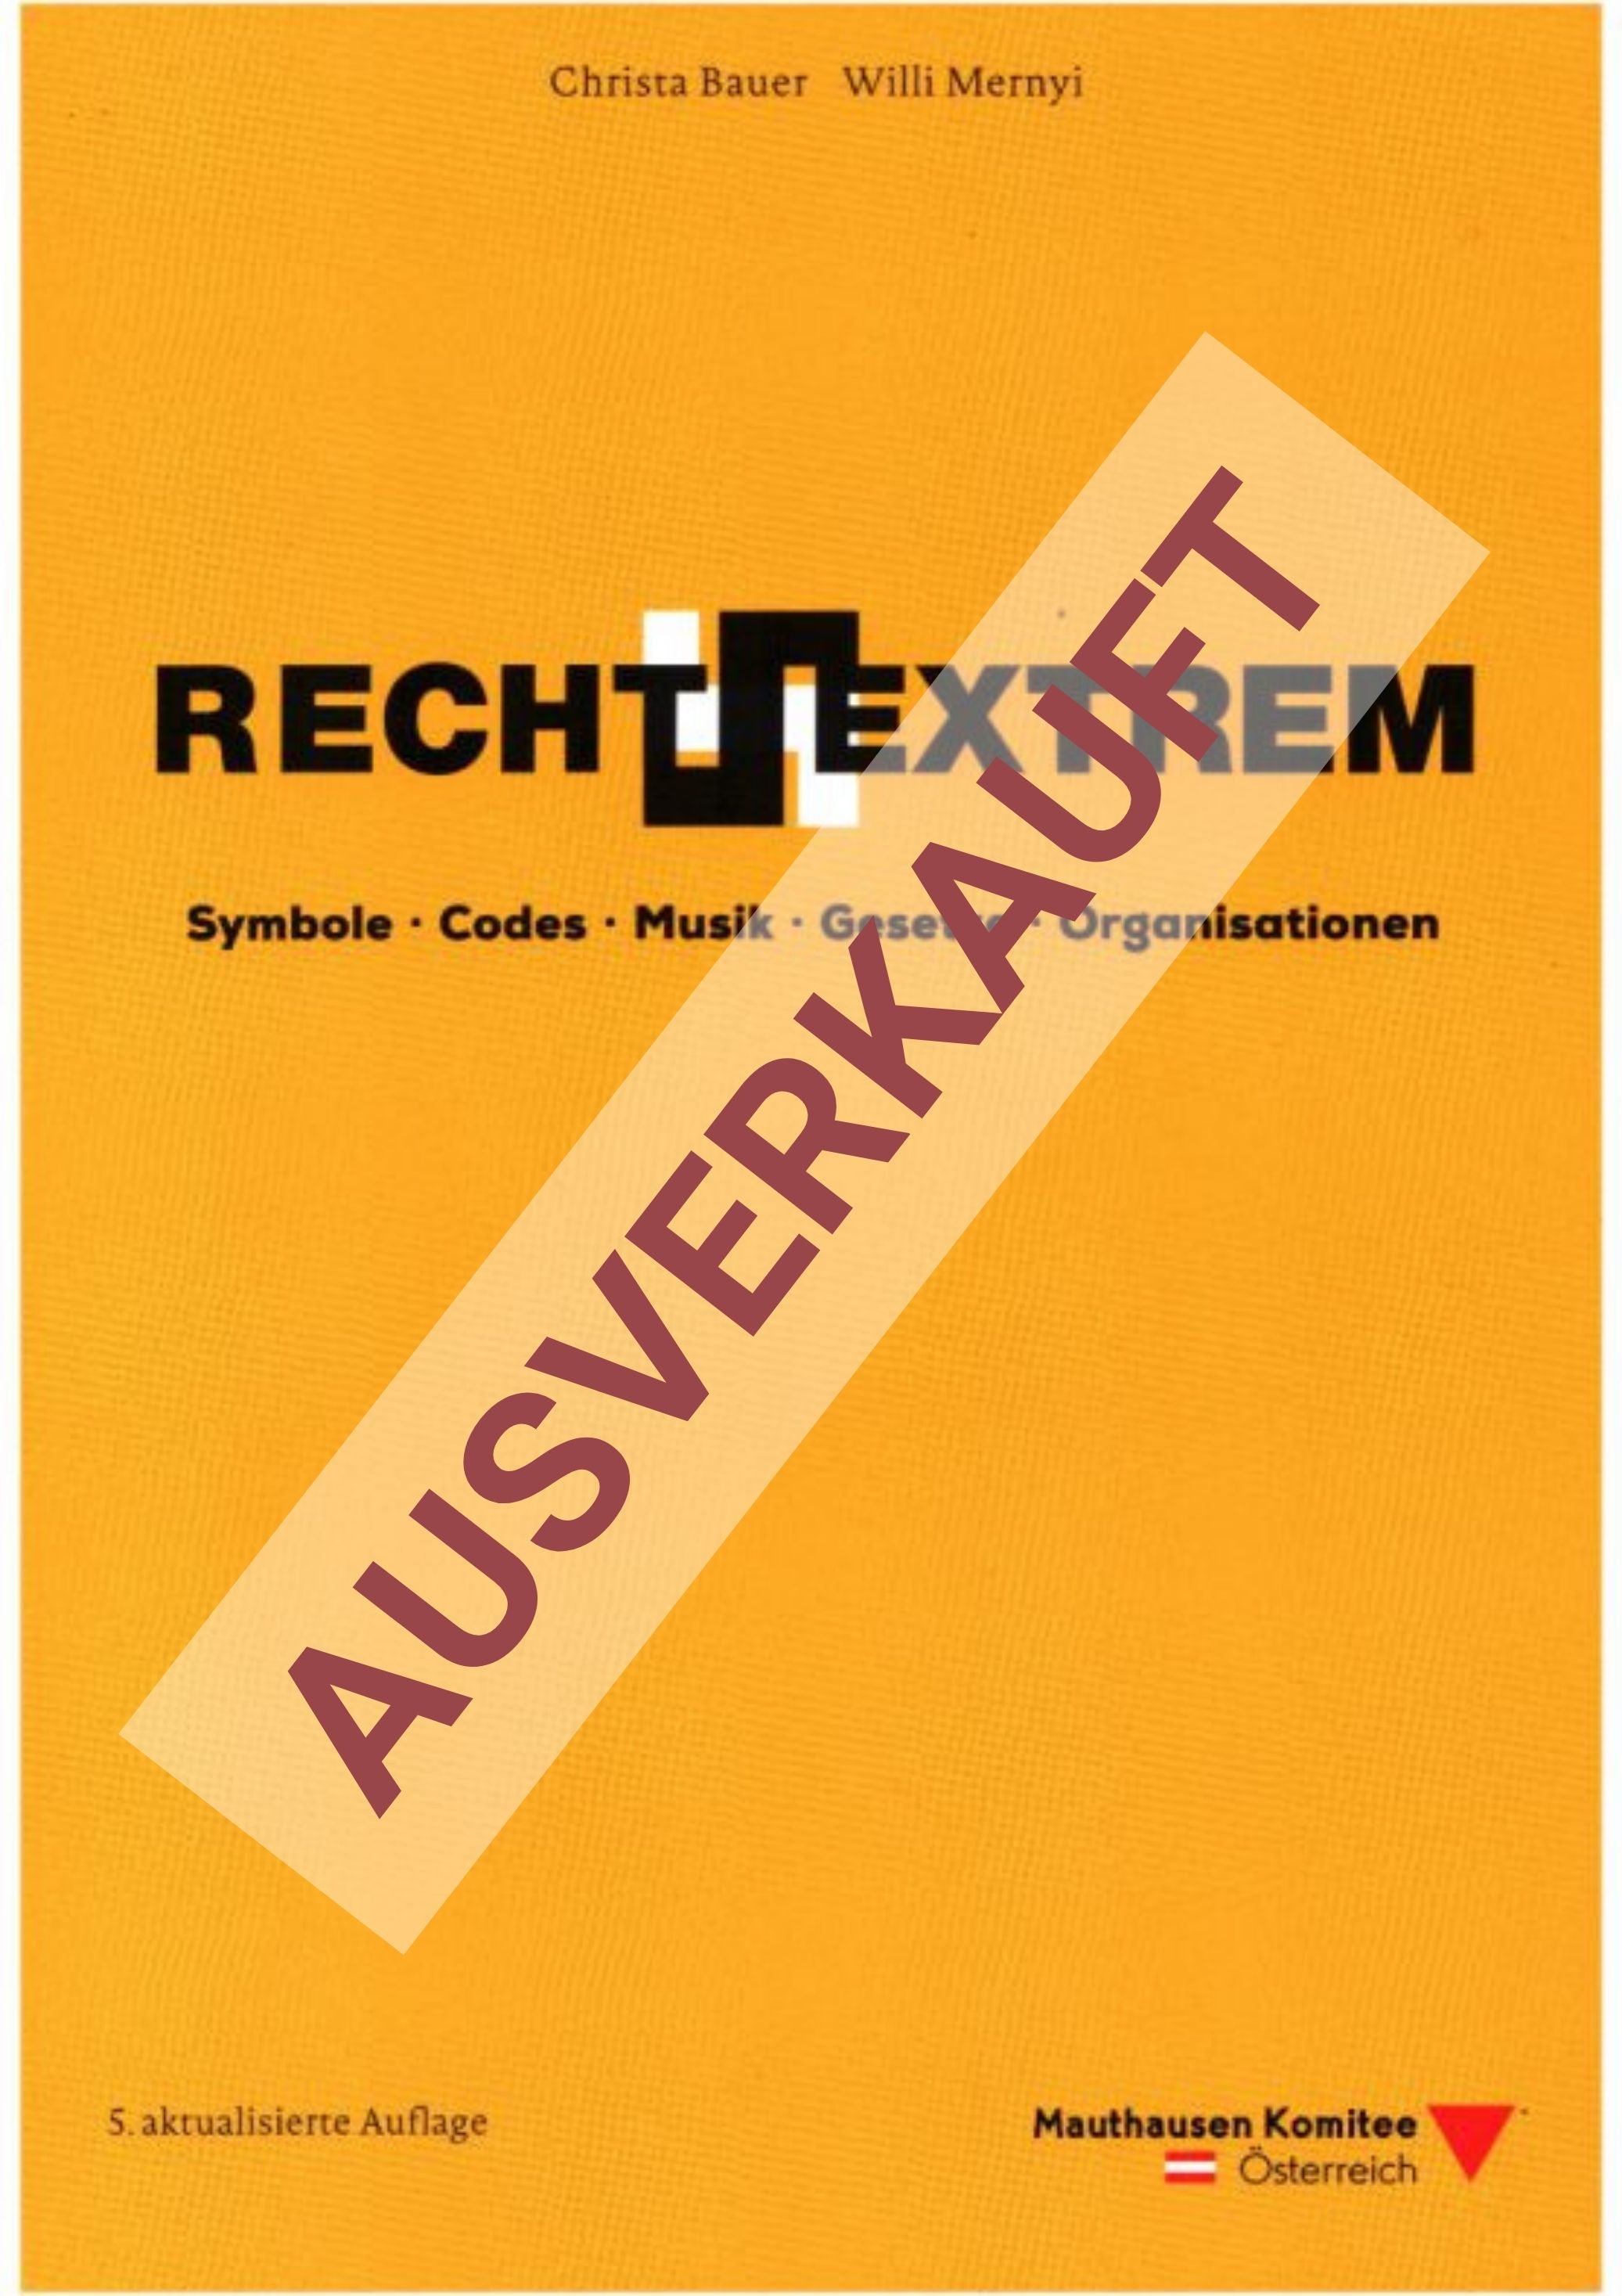 Cover des Buches, Schriftzug "Rechtsextrem" auf orangen Hintergrund. Das Buch ist ausverkauft.